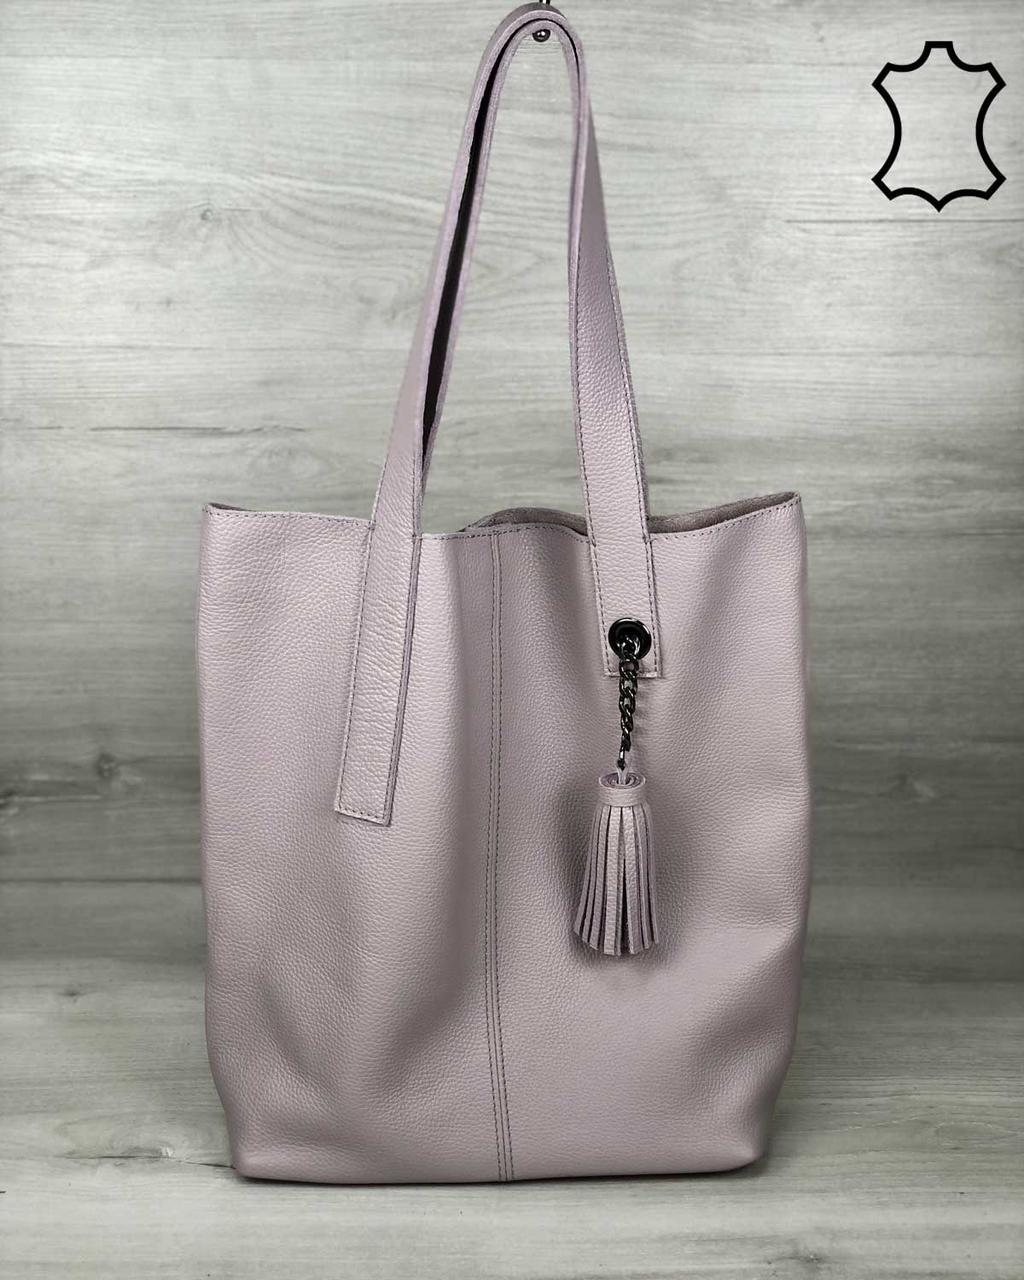 Шкіряна жіноча сумка-шоппер Jolie фіалкового кольору